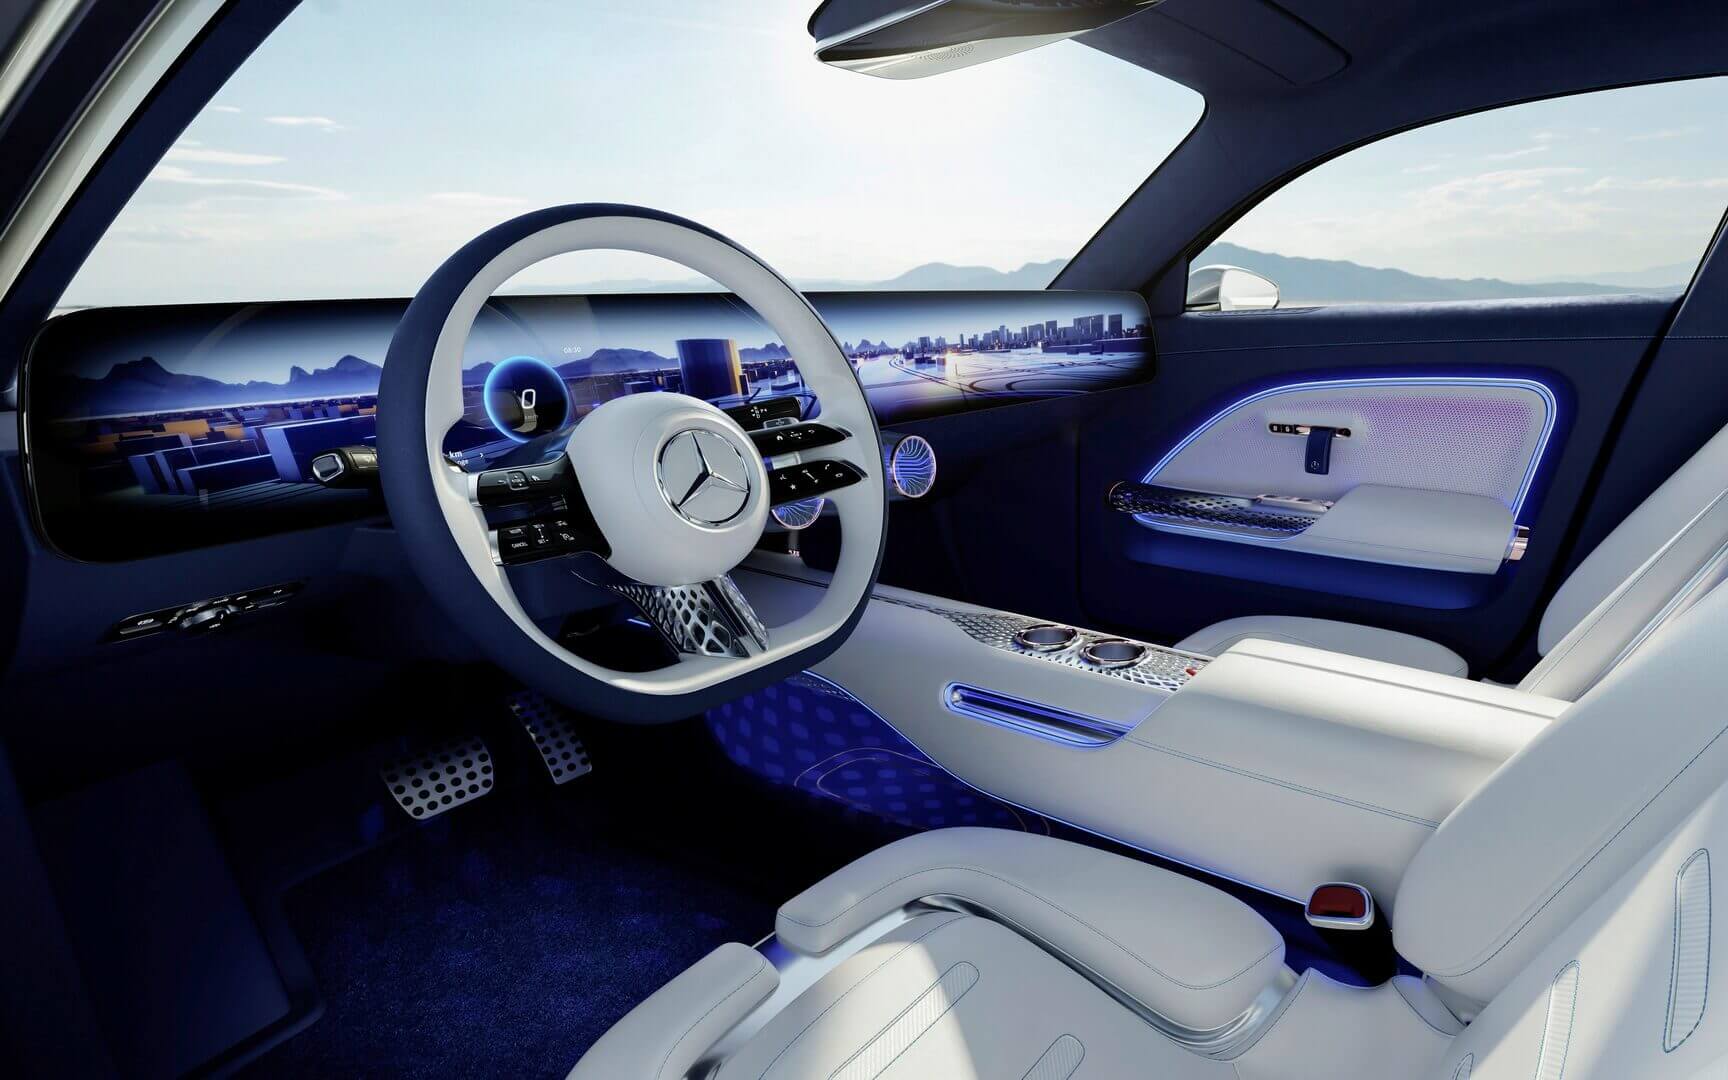 Концепт Mercedes EQXX имеет 47,5-дюймовый сенсорный экран 8K, запас хода более 1000 км и рекордную аэродинамику